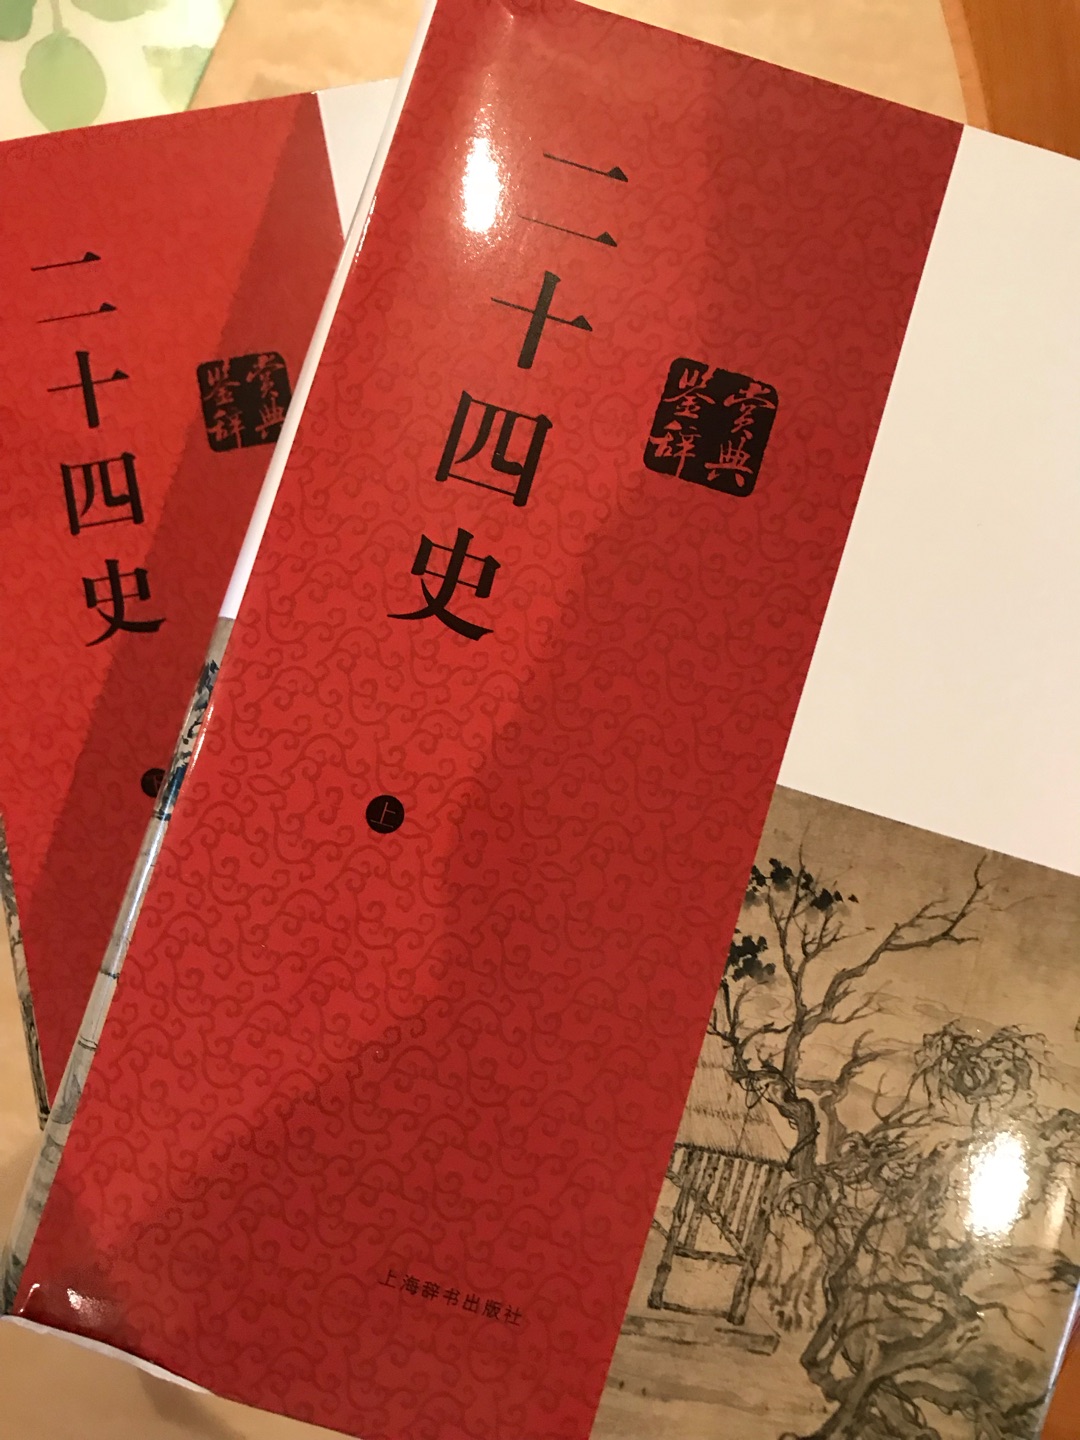 上海辞书出版社出版 正版书籍 促销活动时购买 值得推荐